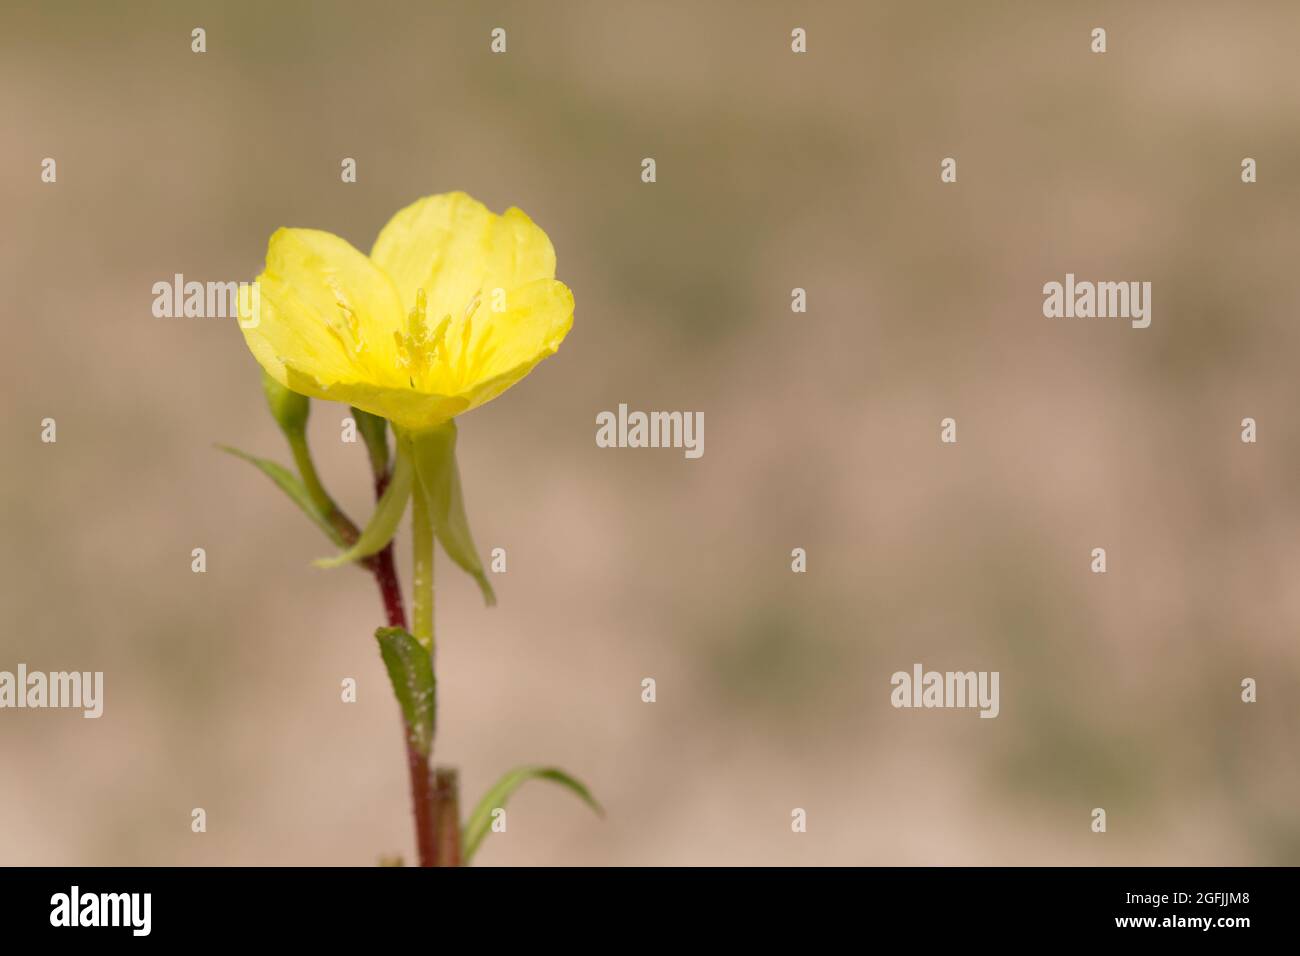 Evening primrose (Oenothera rubricaulis) Stock Photo